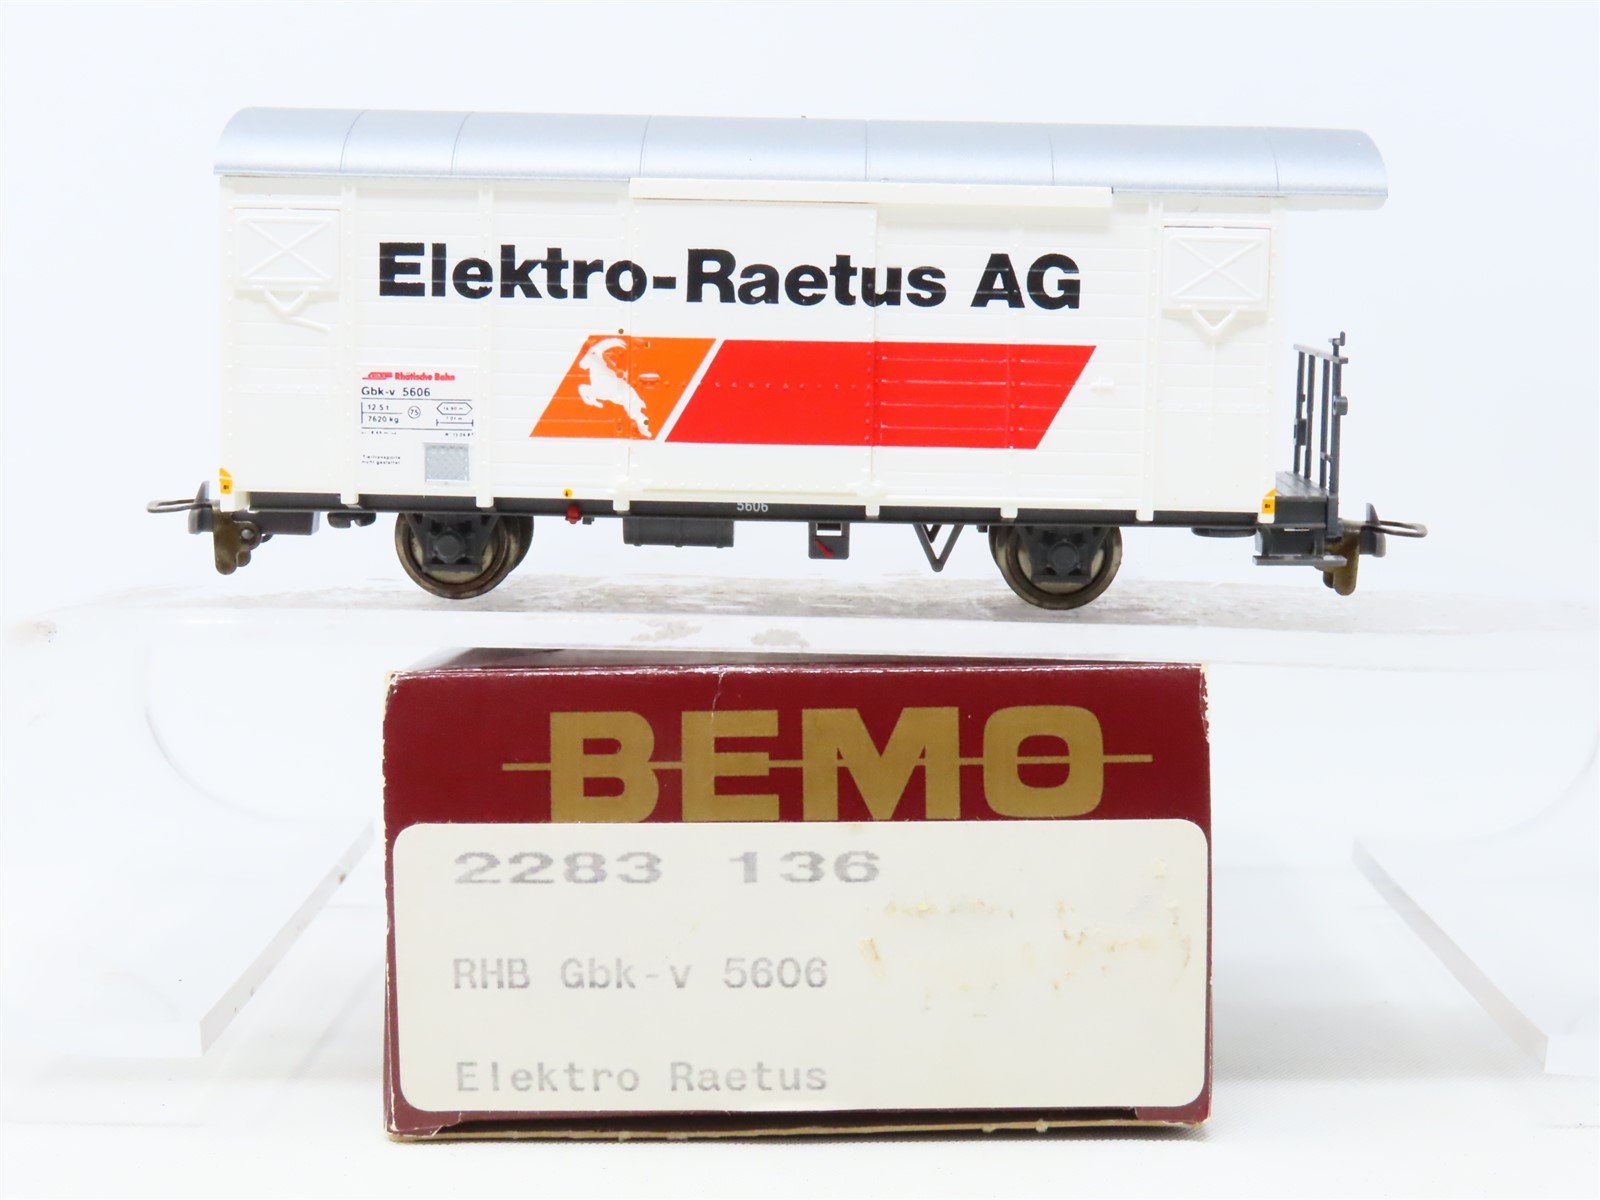 HOm Scale Bemo 2283-136 RhB Rhaetian Railway "Elektro-Raetus AG" Box Car #5606